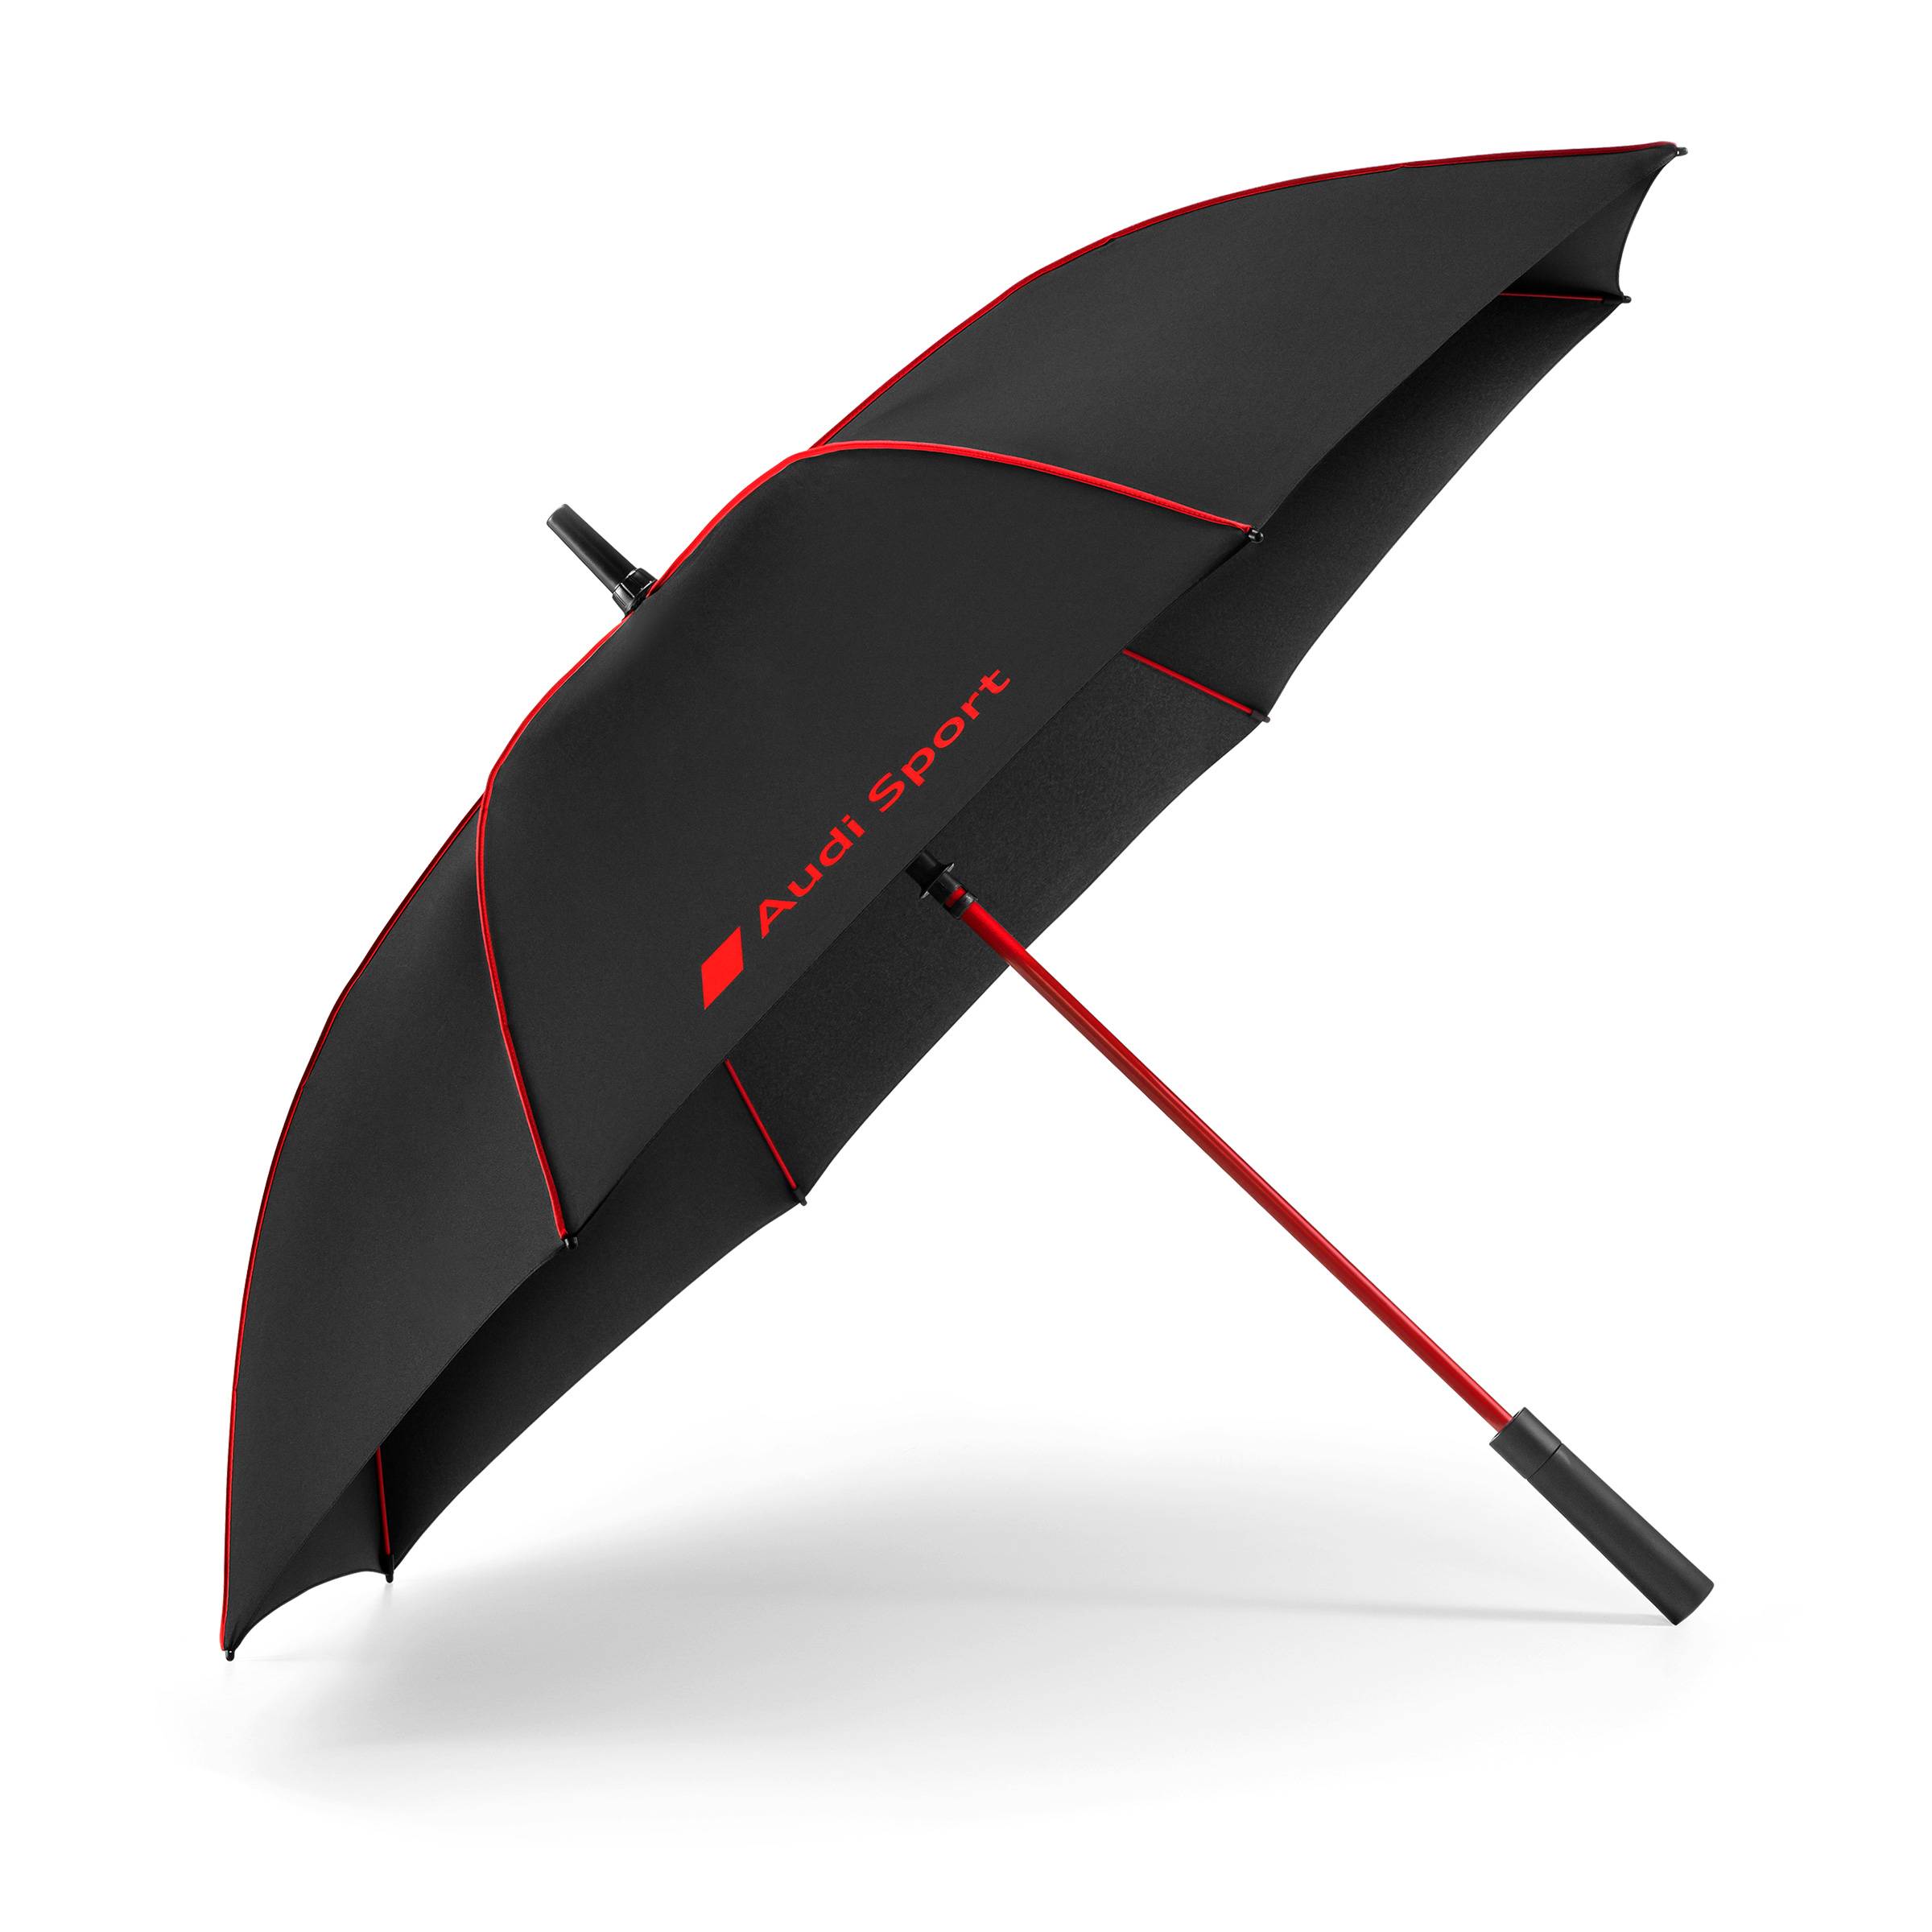 ร่มอัตโนมัติ  Audi Sport Umbrella, black/red, big